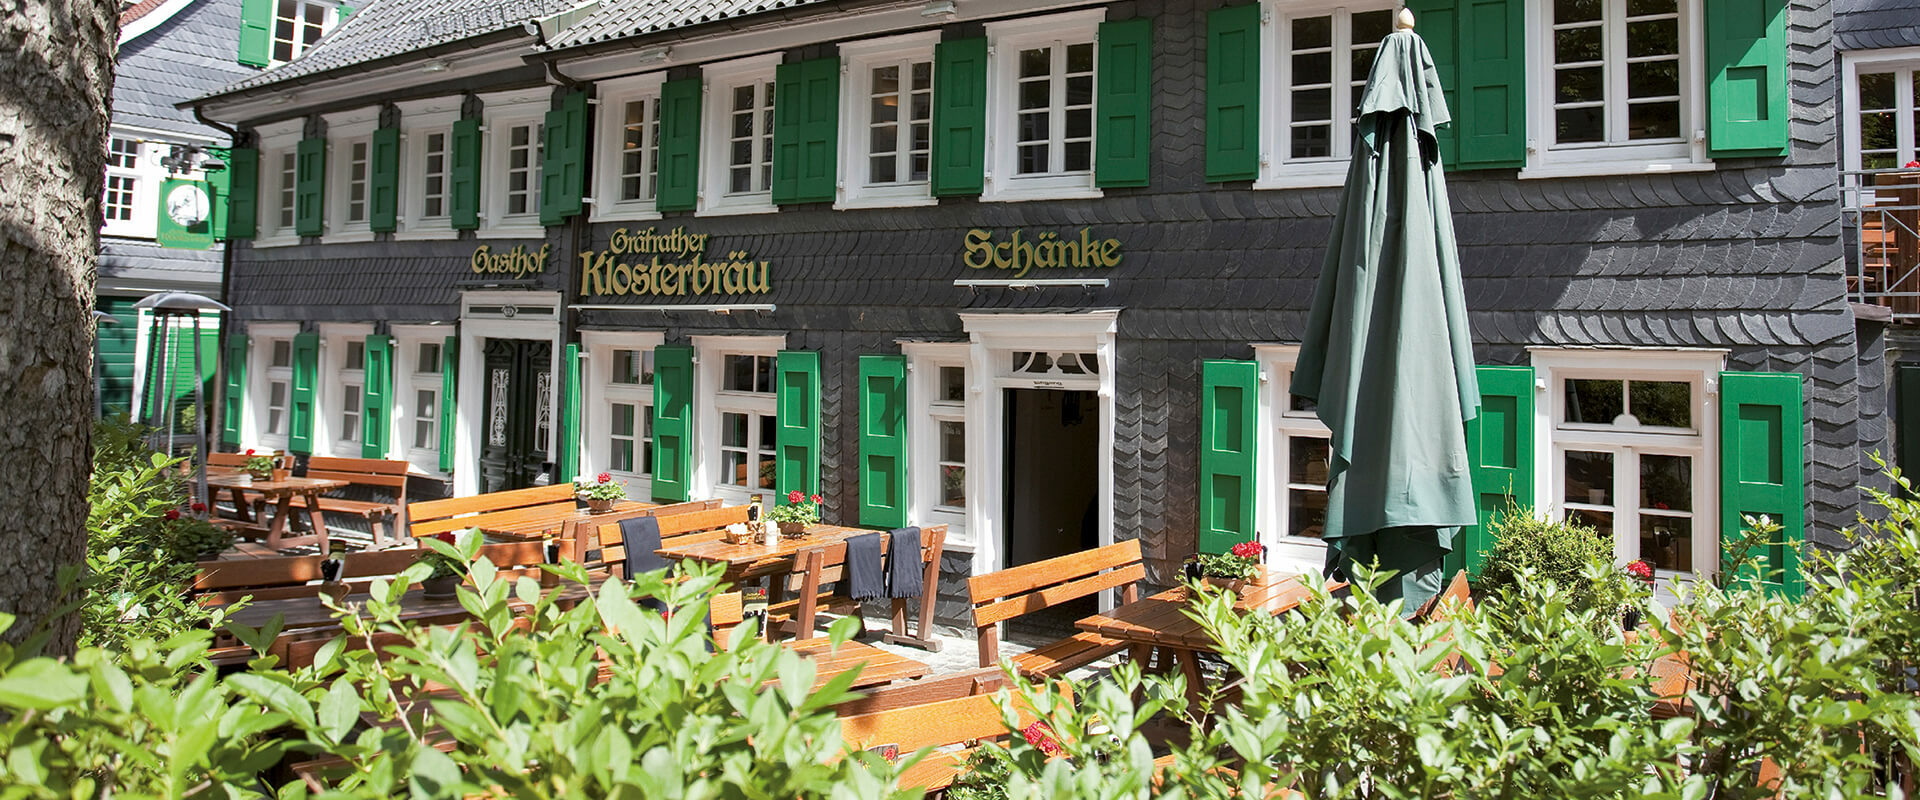 Restaurant & Brauhaus Gräfrather Klosterbräu Aussenansicht